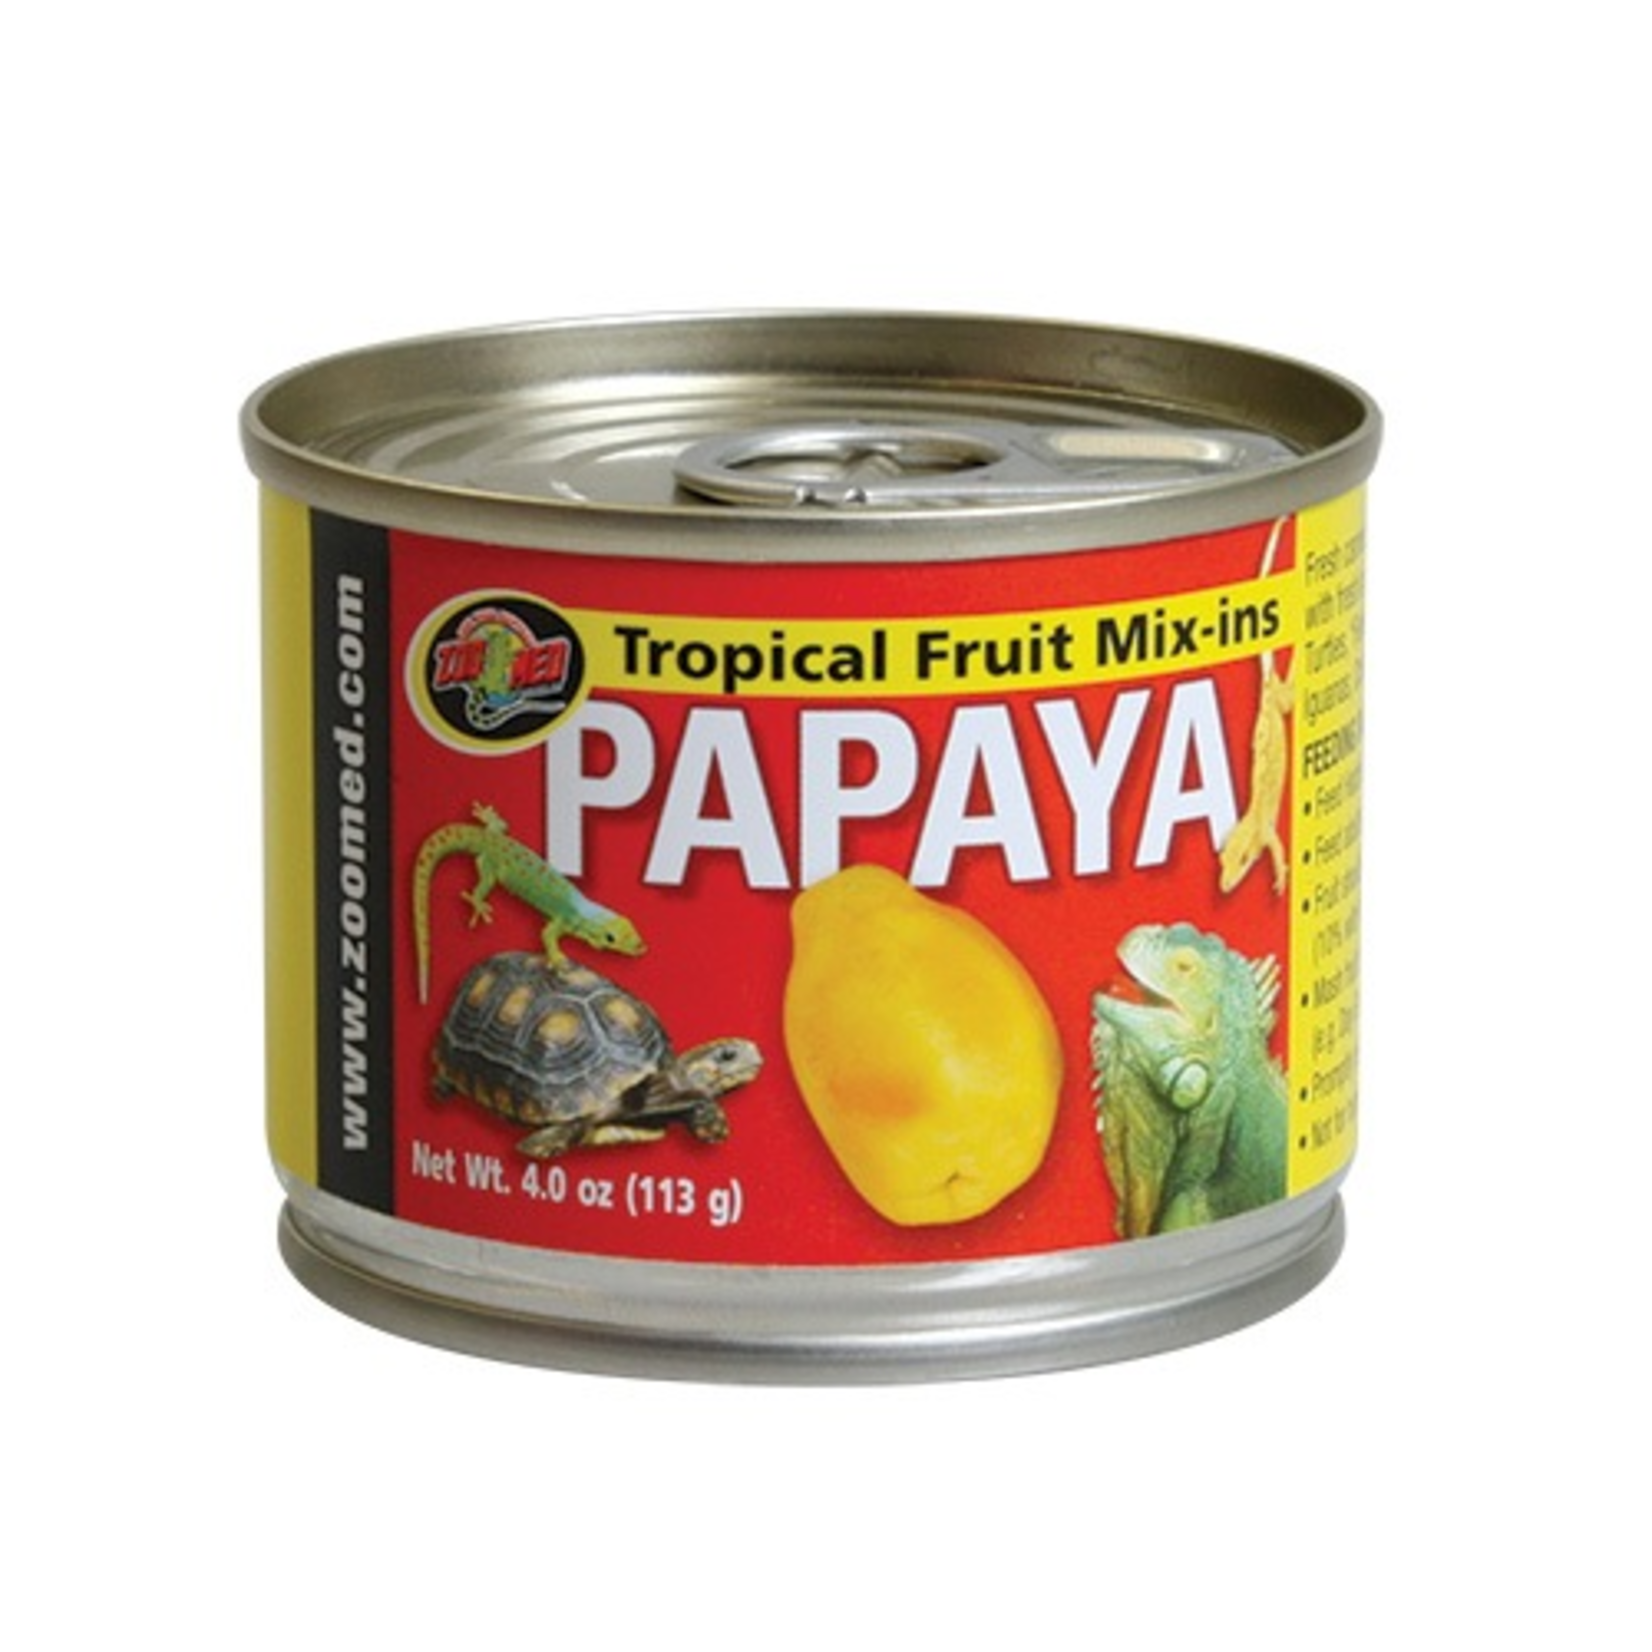 (W) Tropical Fruit Mix-ins Papaya